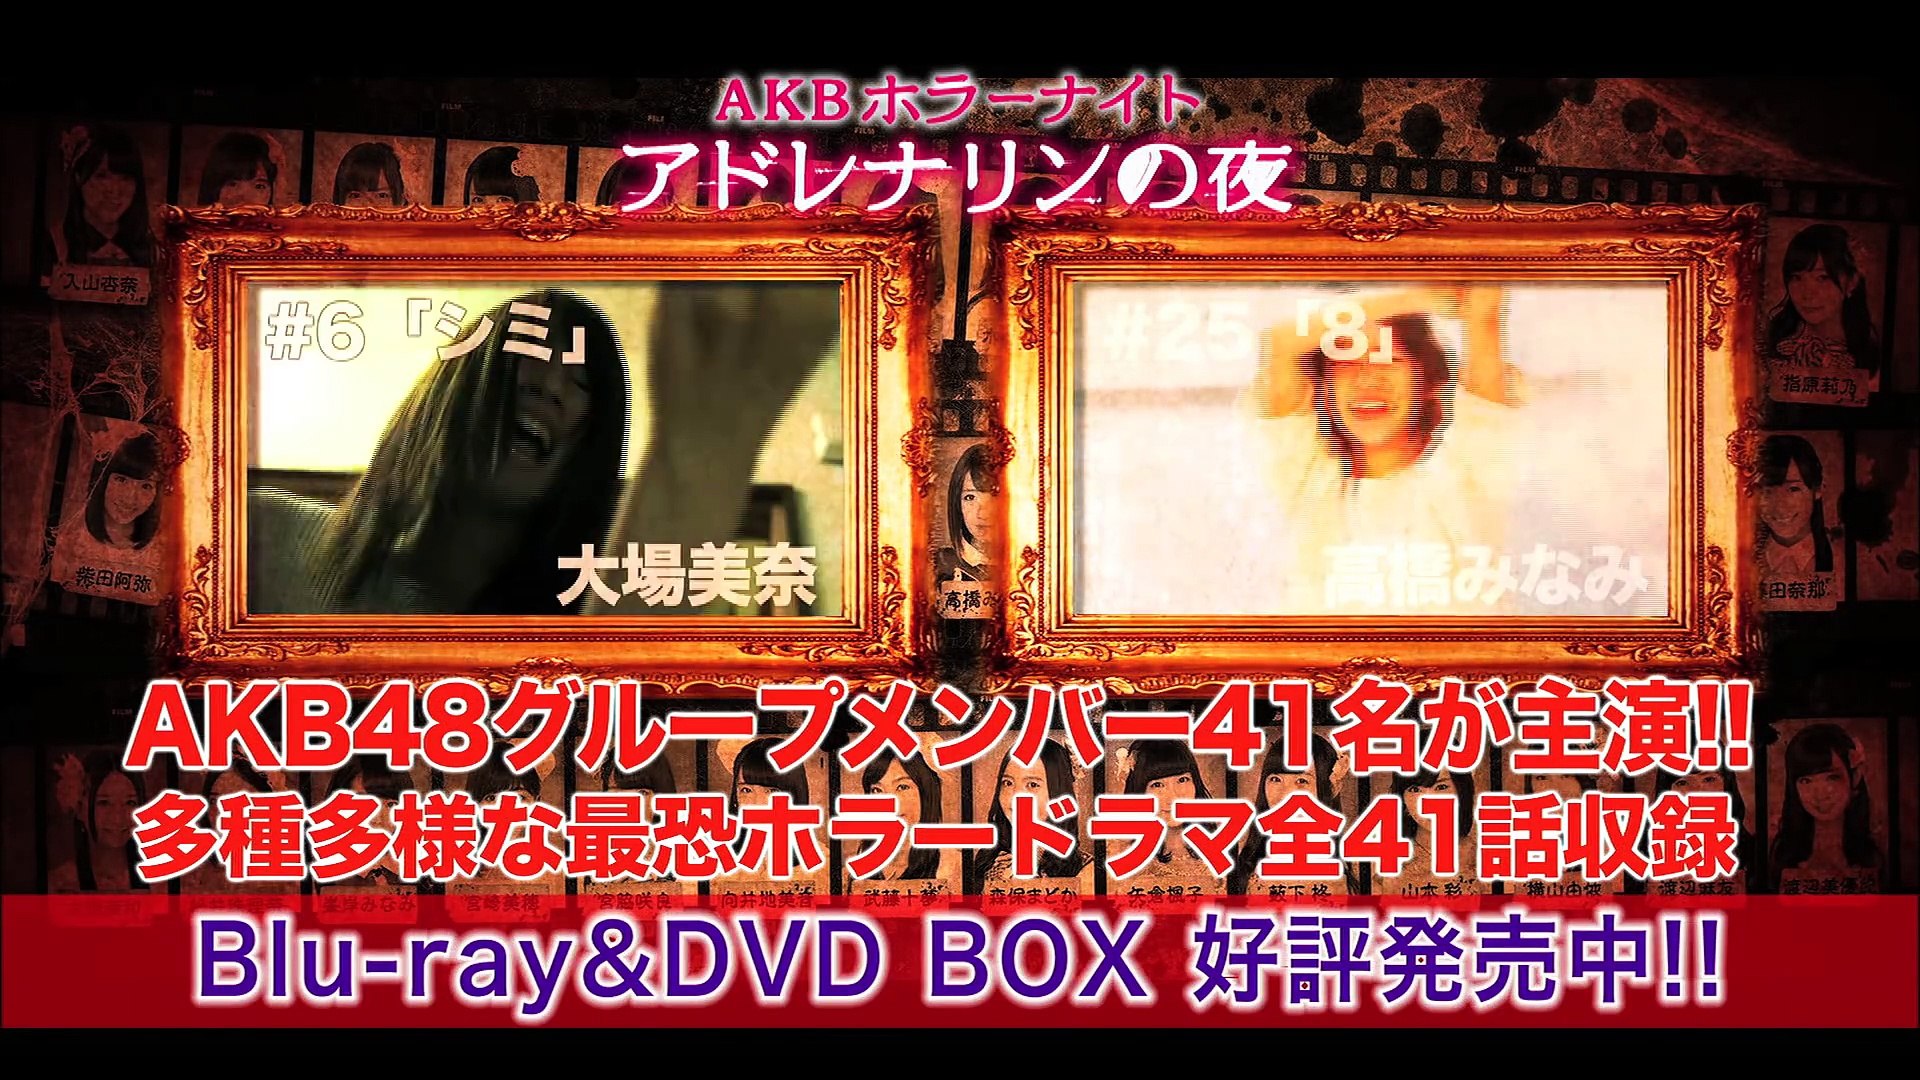 AKBホラーナイト アドレナリンの夜 DVD＆Blu-ray BOX」PR映像 公開!! AKB48[公式] - video Dailymotion